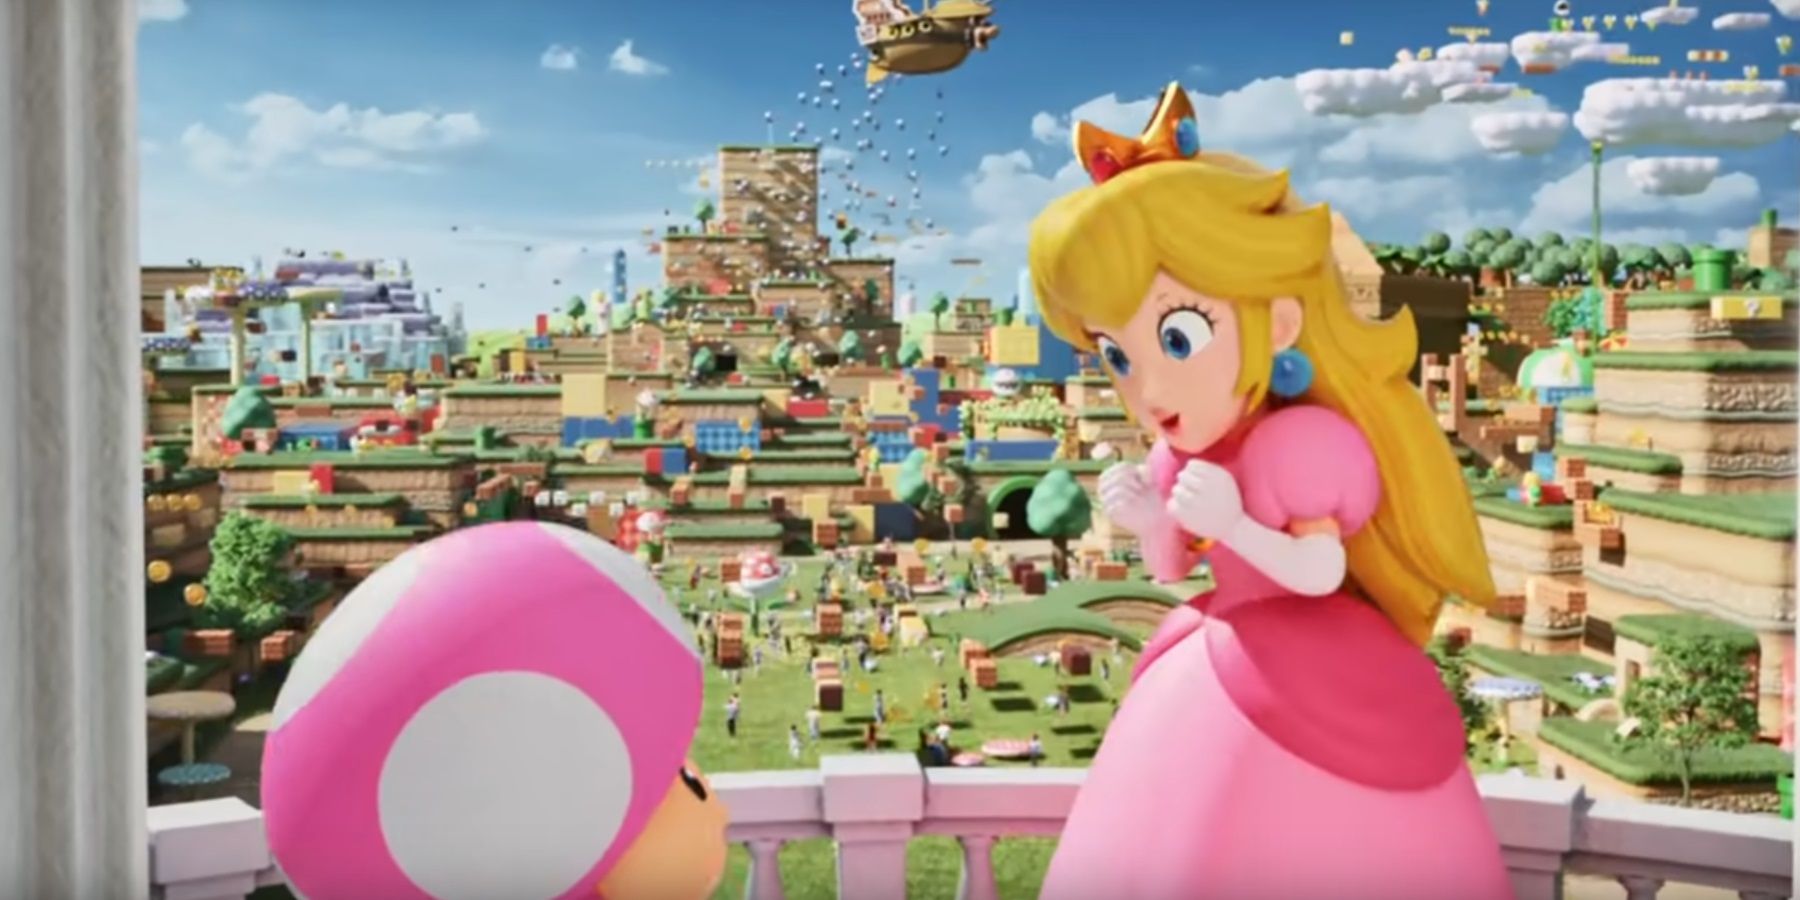 Super Nintendo World's opening has been delayed